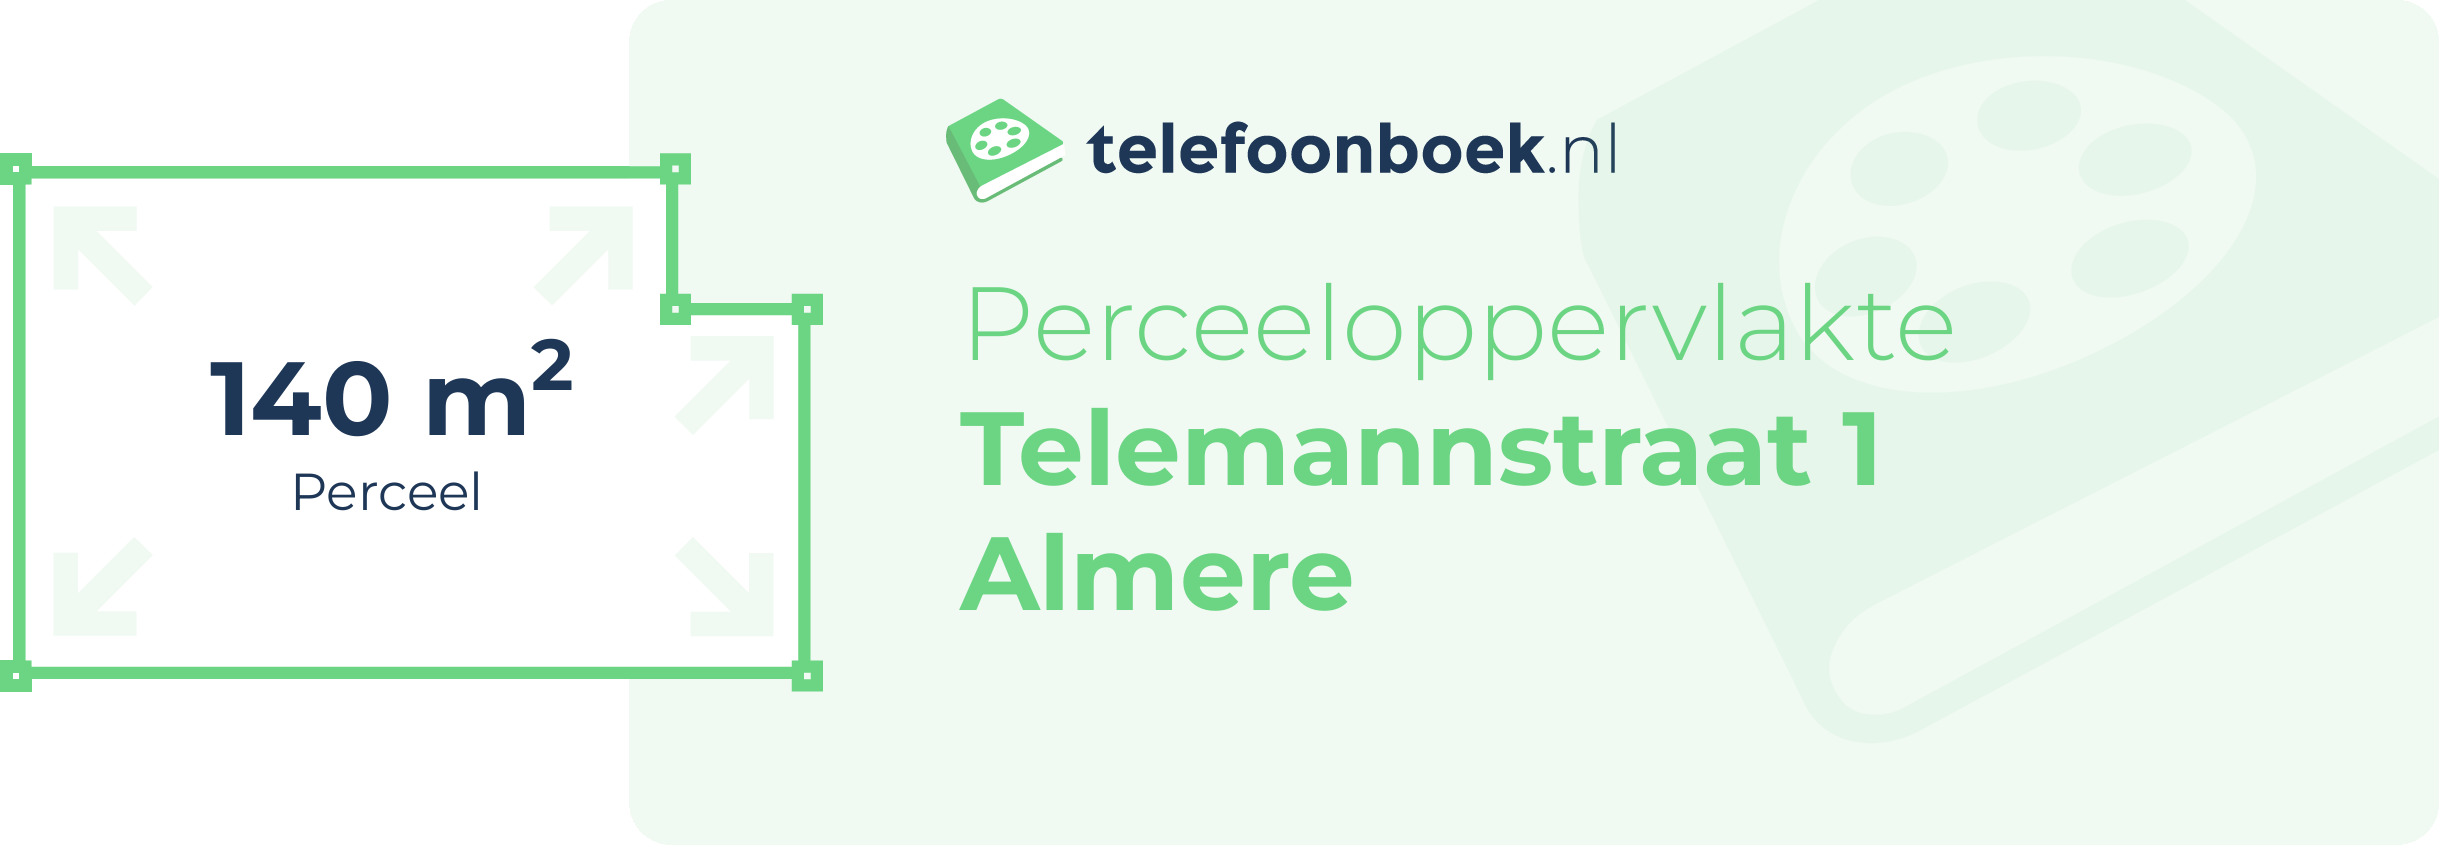 Perceeloppervlakte Telemannstraat 1 Almere